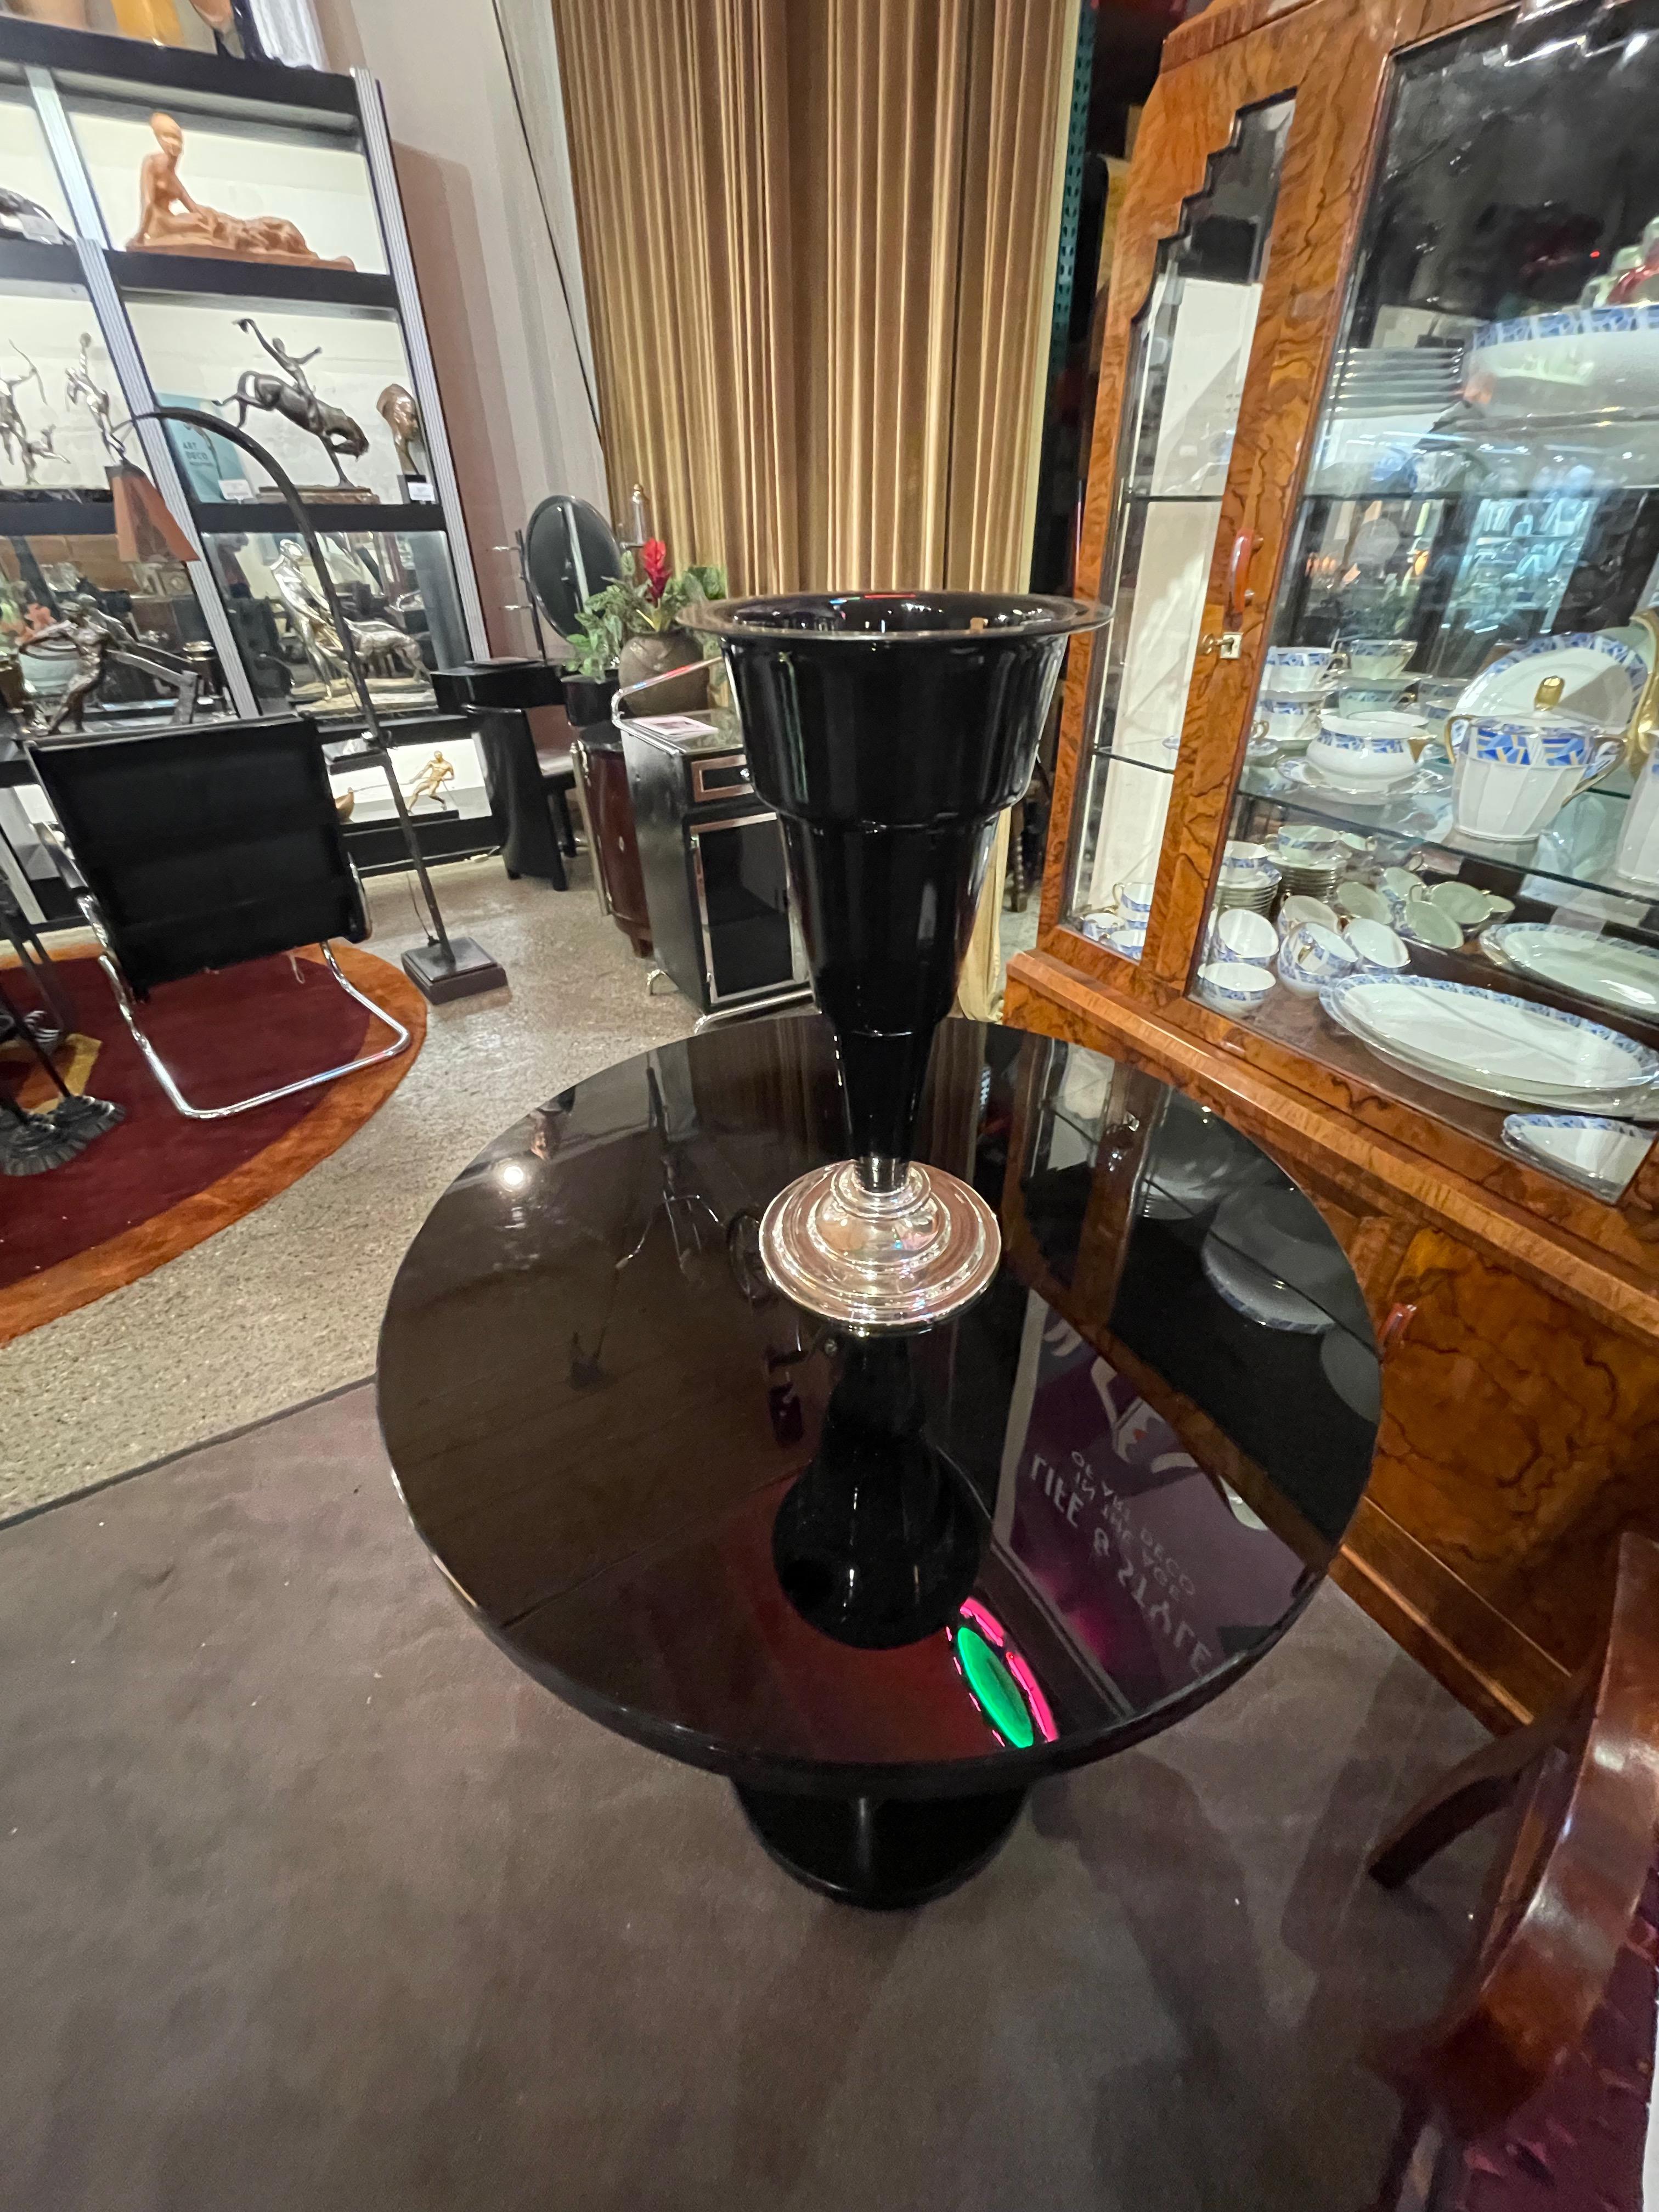 Art Deco große Vase aus schwarzem Glas mit Chromsockel. Abgestuftes Glasdesign mit stilechtem, abgestuftem Chromfuß. Sehr nützlich und würde auf so viele verschiedene Arten großartig aussehen, indem man verschiedene Pflanzen und Vasenideen